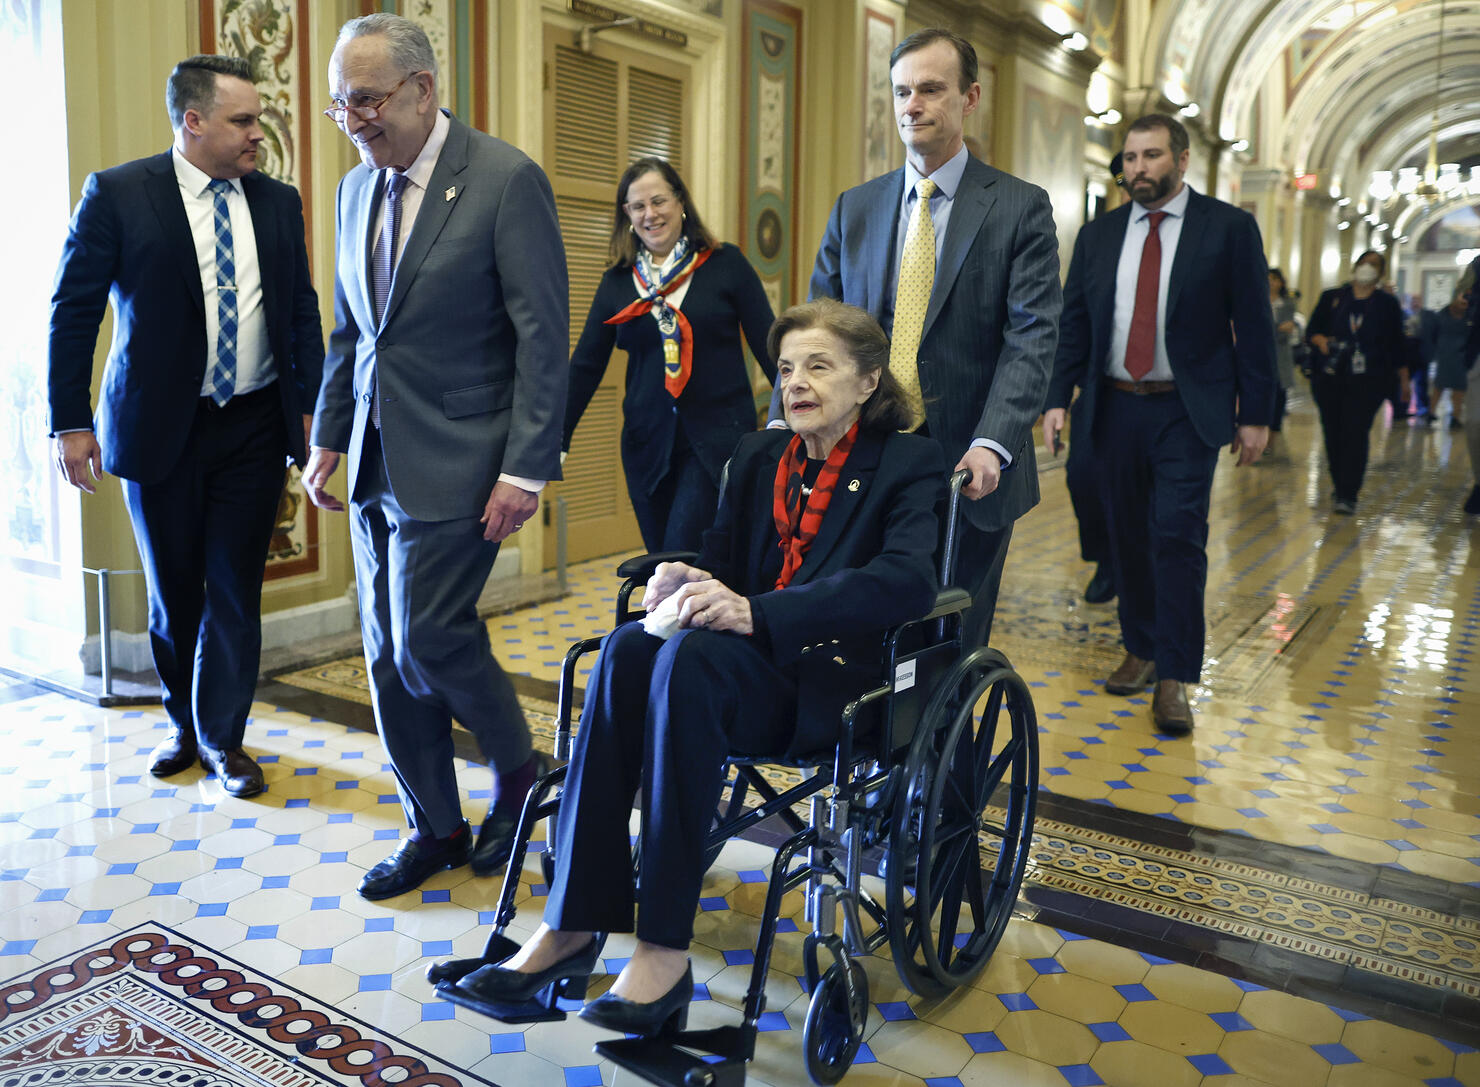 Senator Feinstein Returns To Capitol Hill After Months-Long Absence